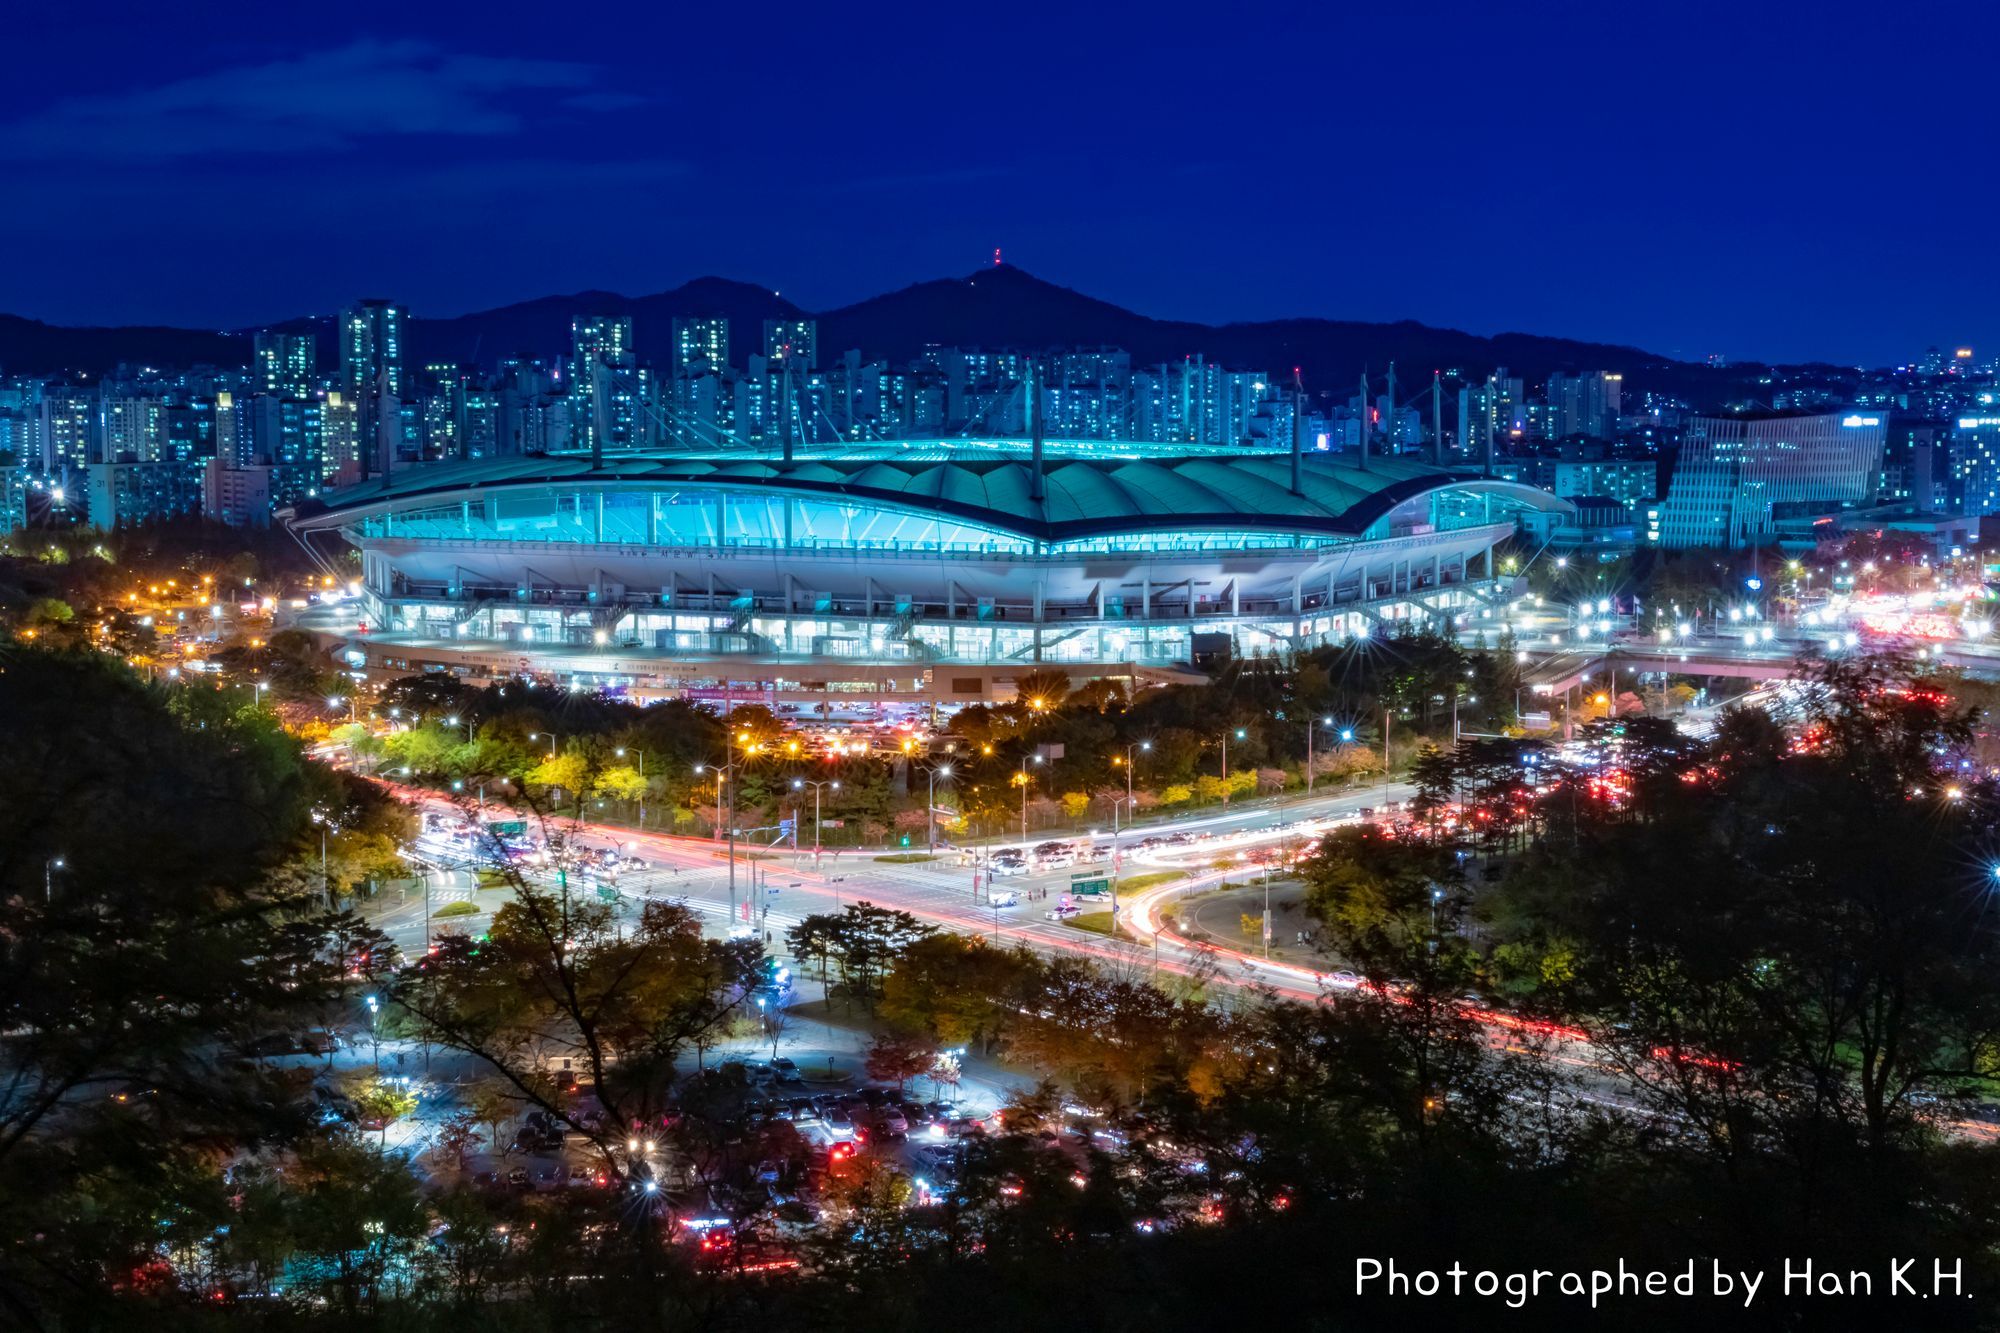 서울월드컵경기장 야경 (Night View of Seoul World Cup Stadium)